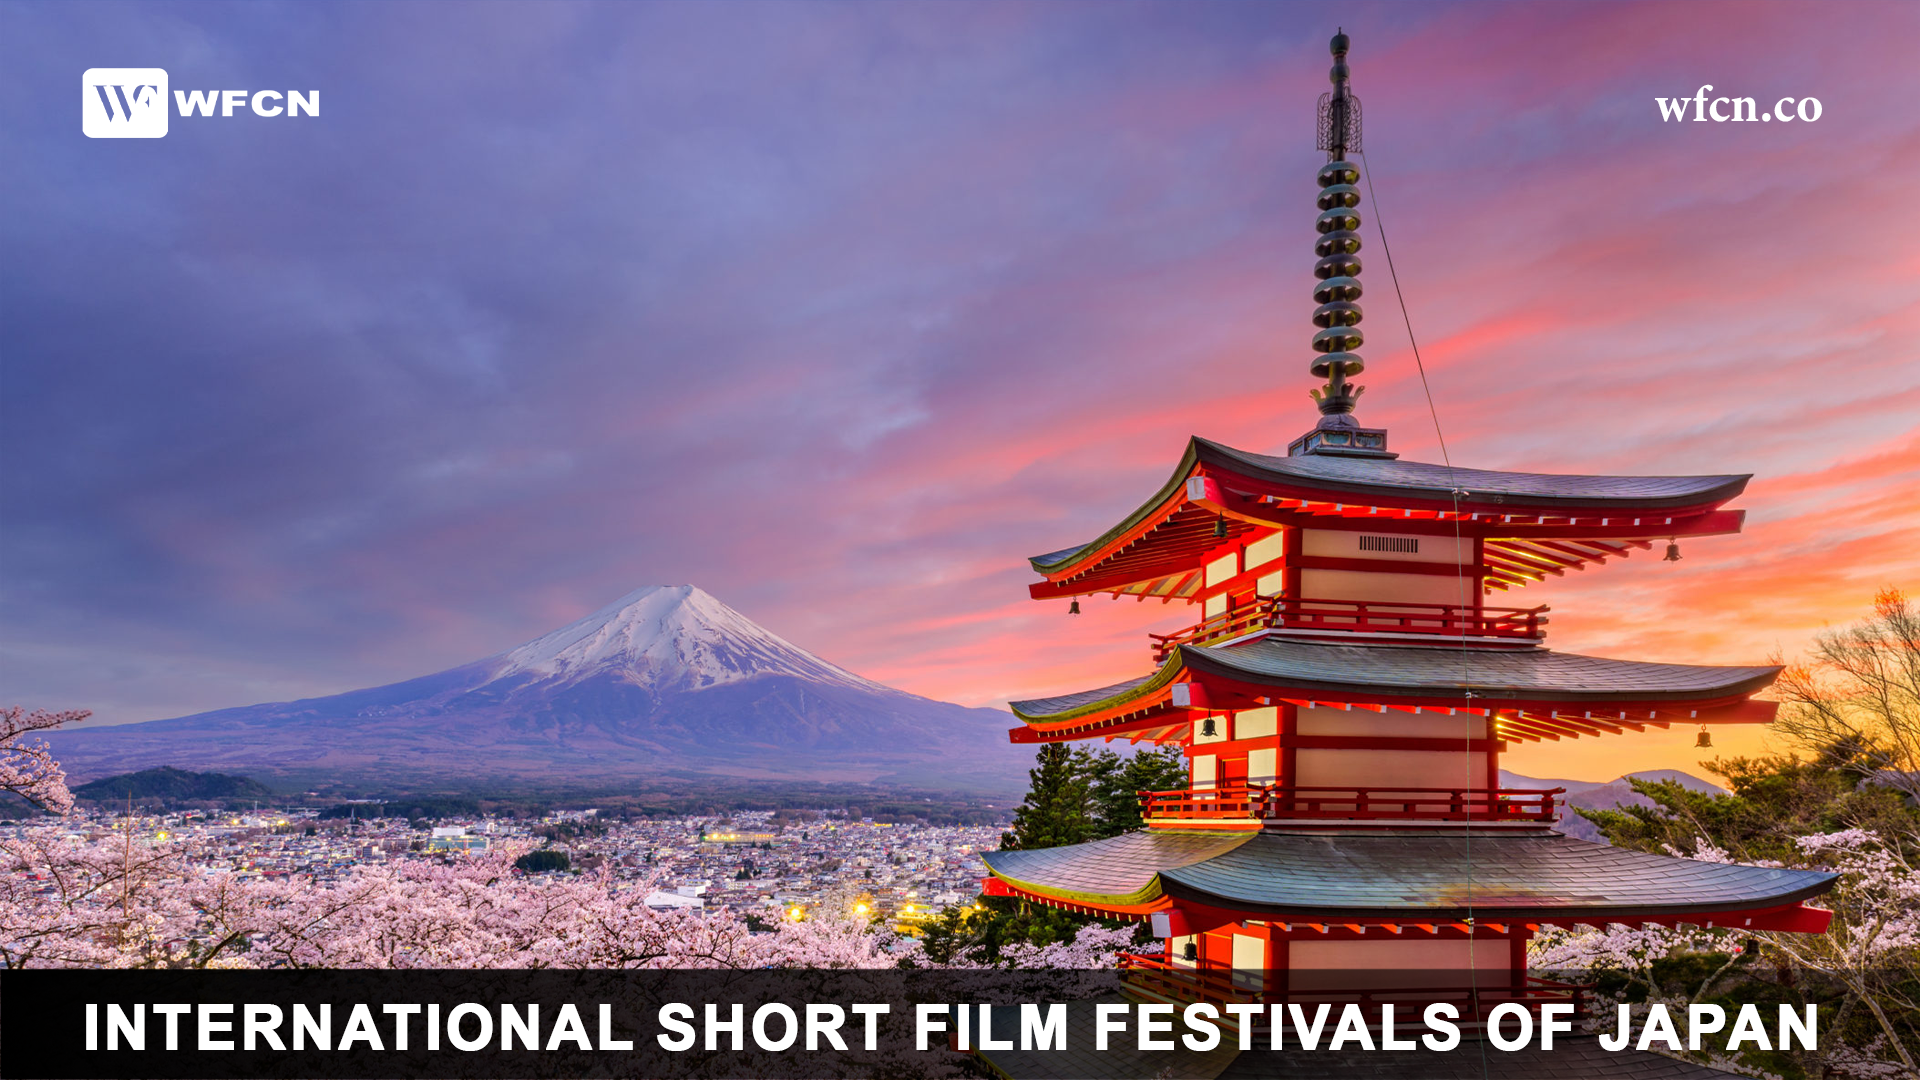 International Short Film Festivals of Japan